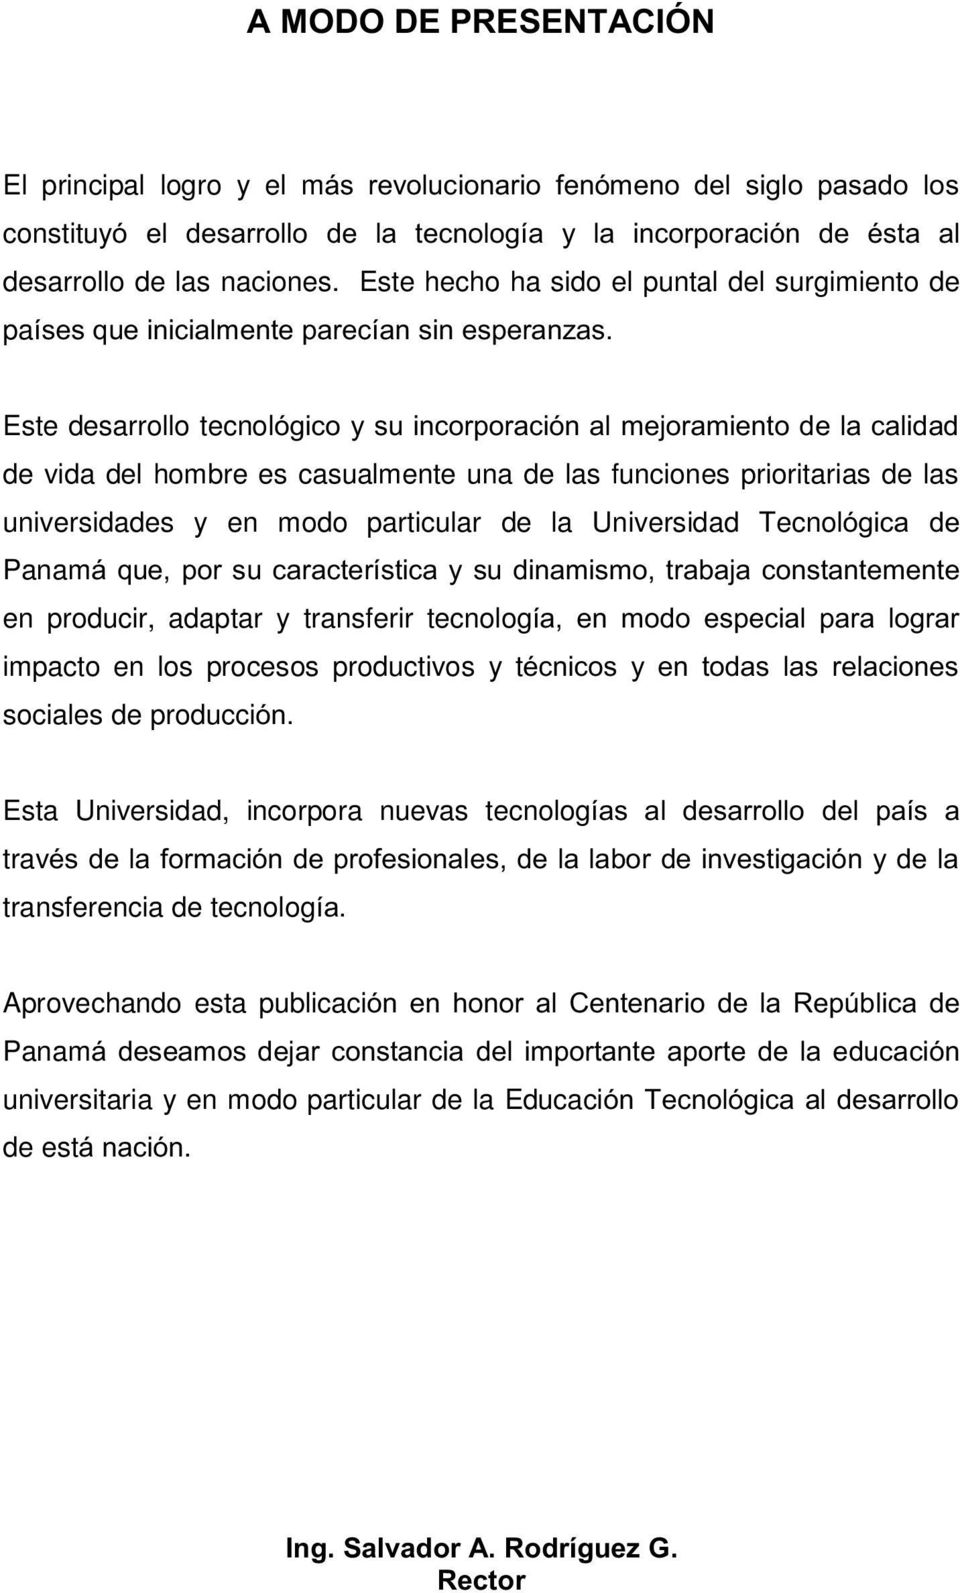 prioritarias de las universidades y en modo particular de la Universidad Tecnol Panam en producir, adaptar y transferir tecnolog impacto